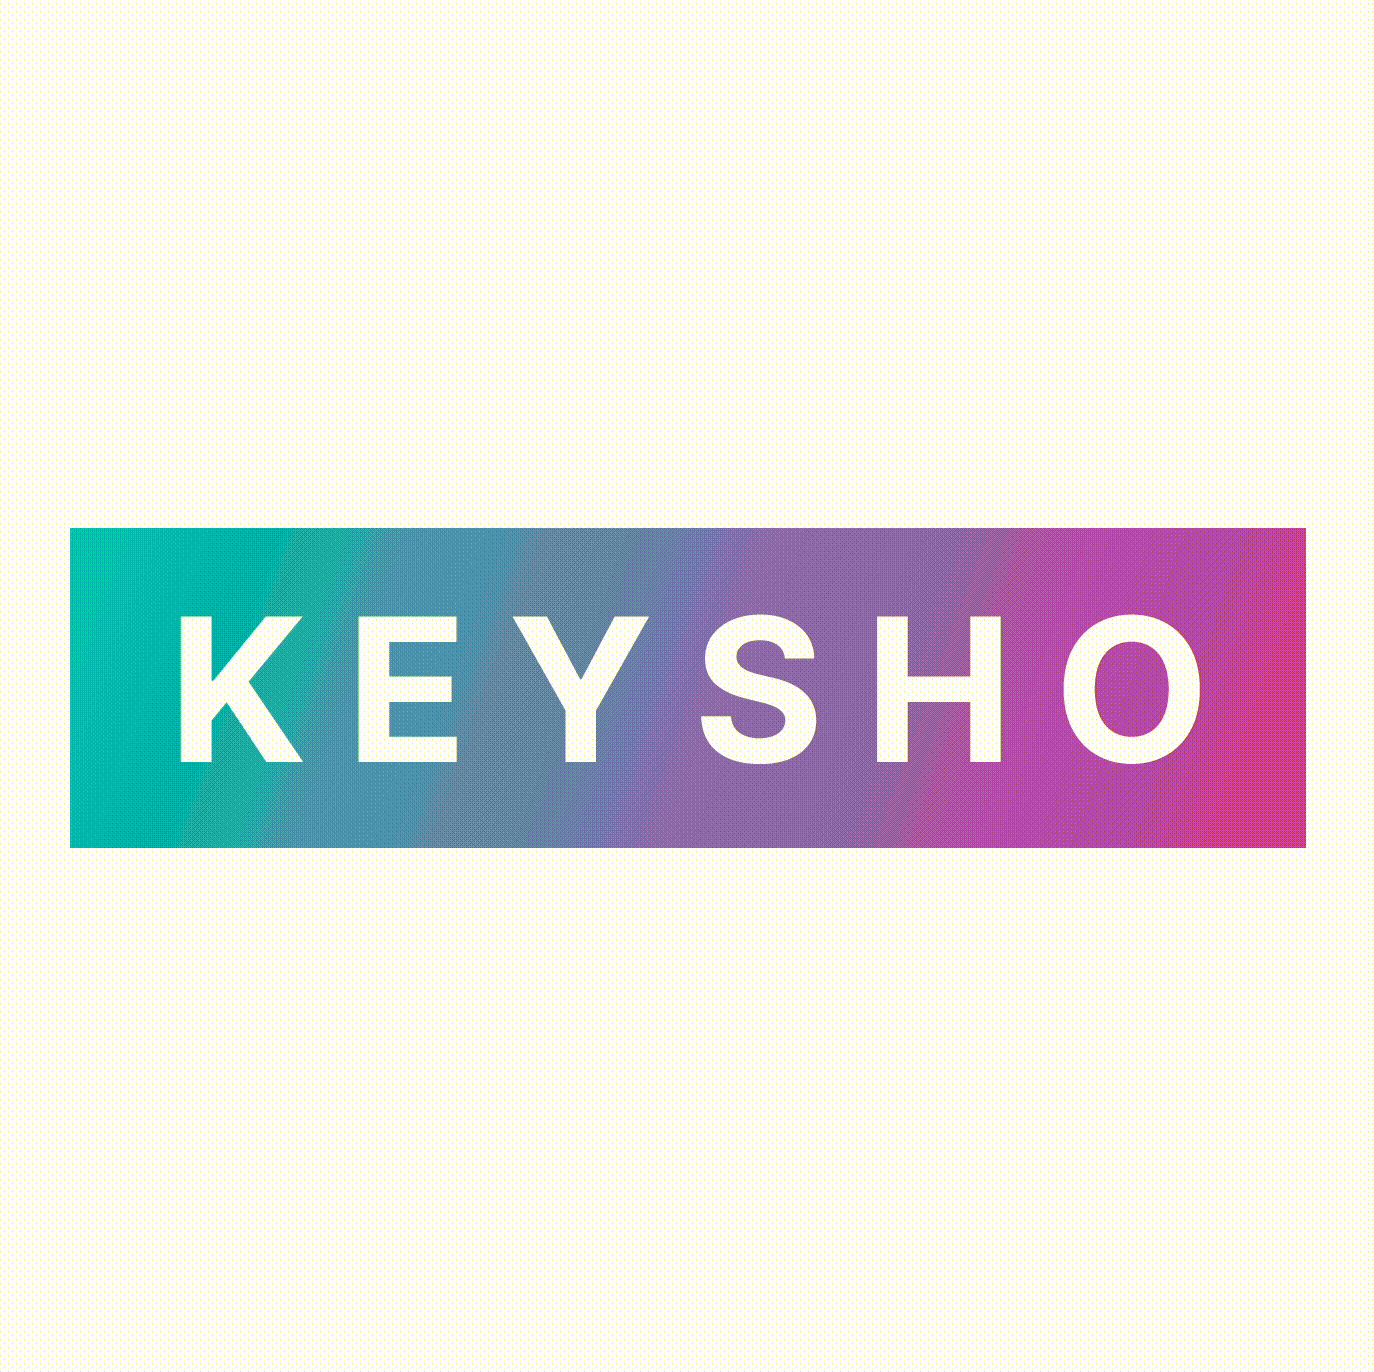 Keysho